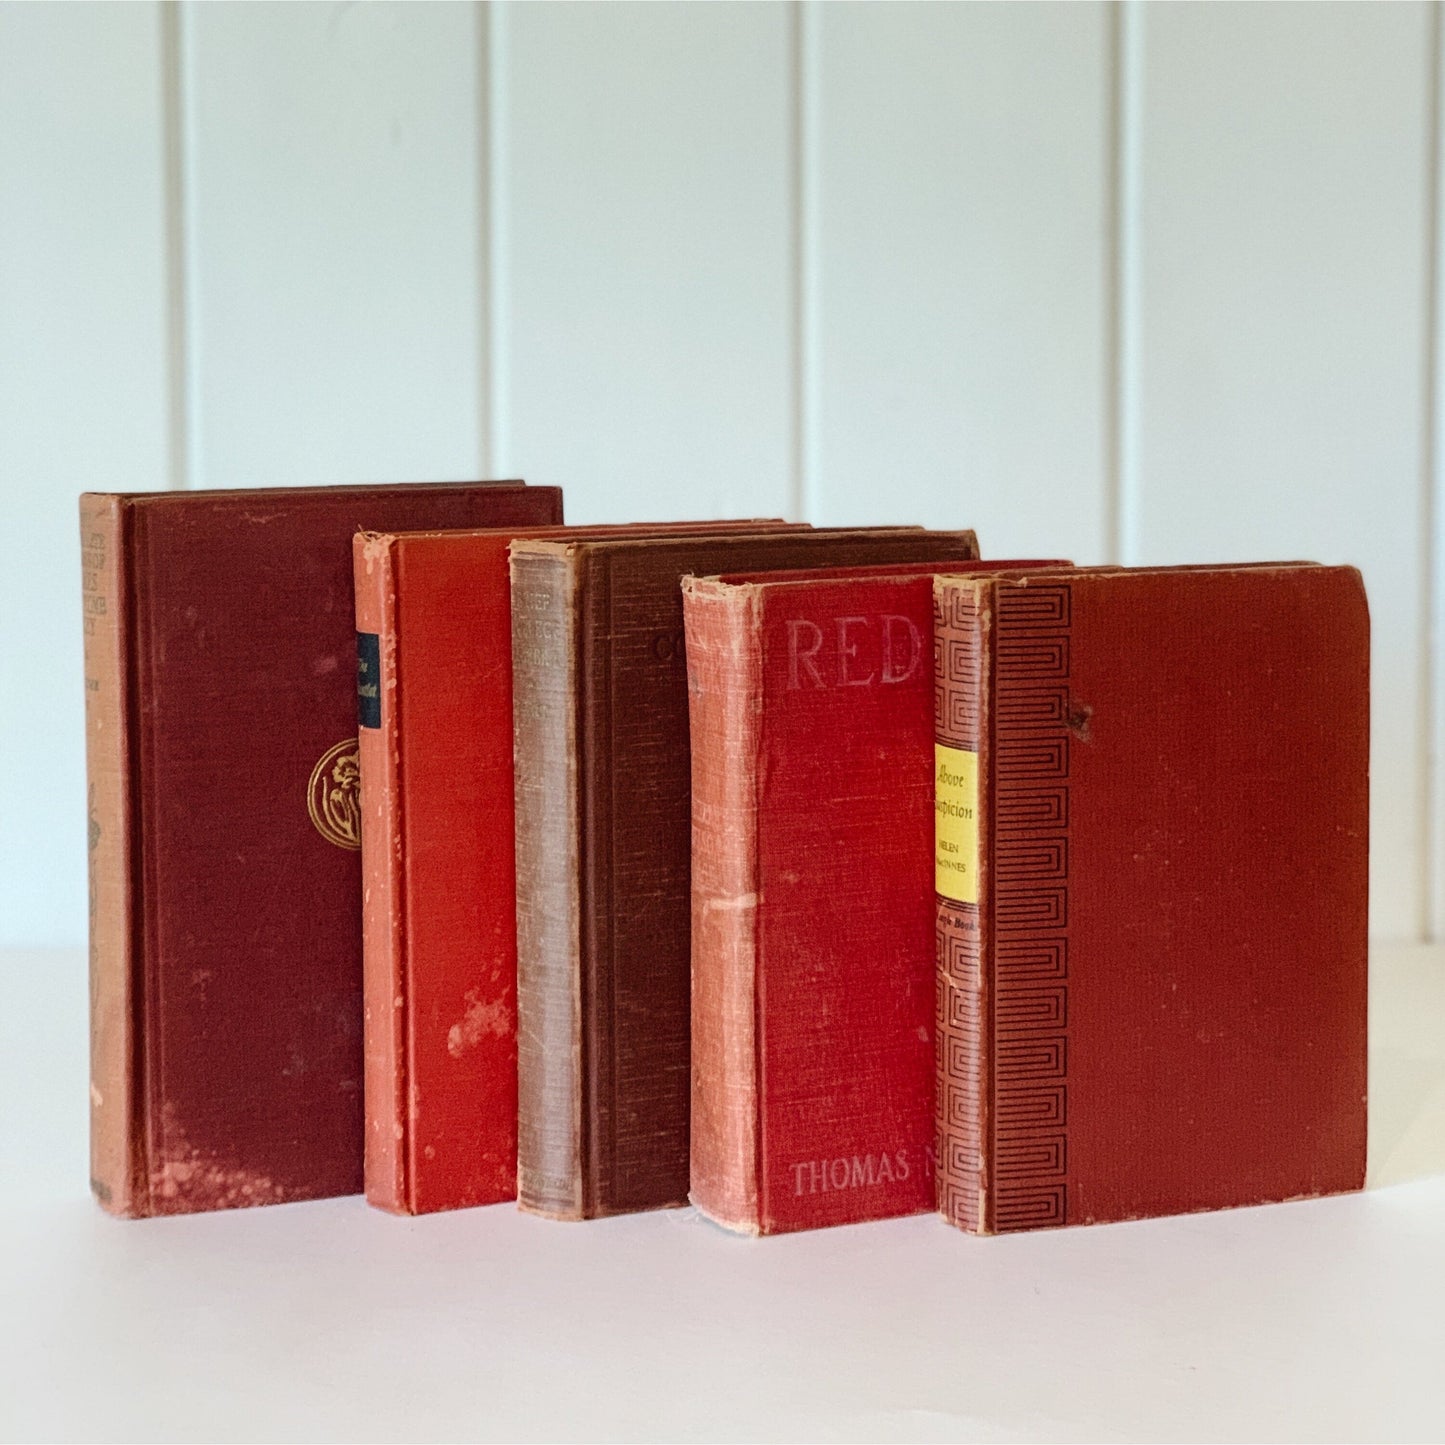 Vintage Red Shabby Books for Decor, Old Books for Bookshelf Decor, Farmhouse Shelf Styling